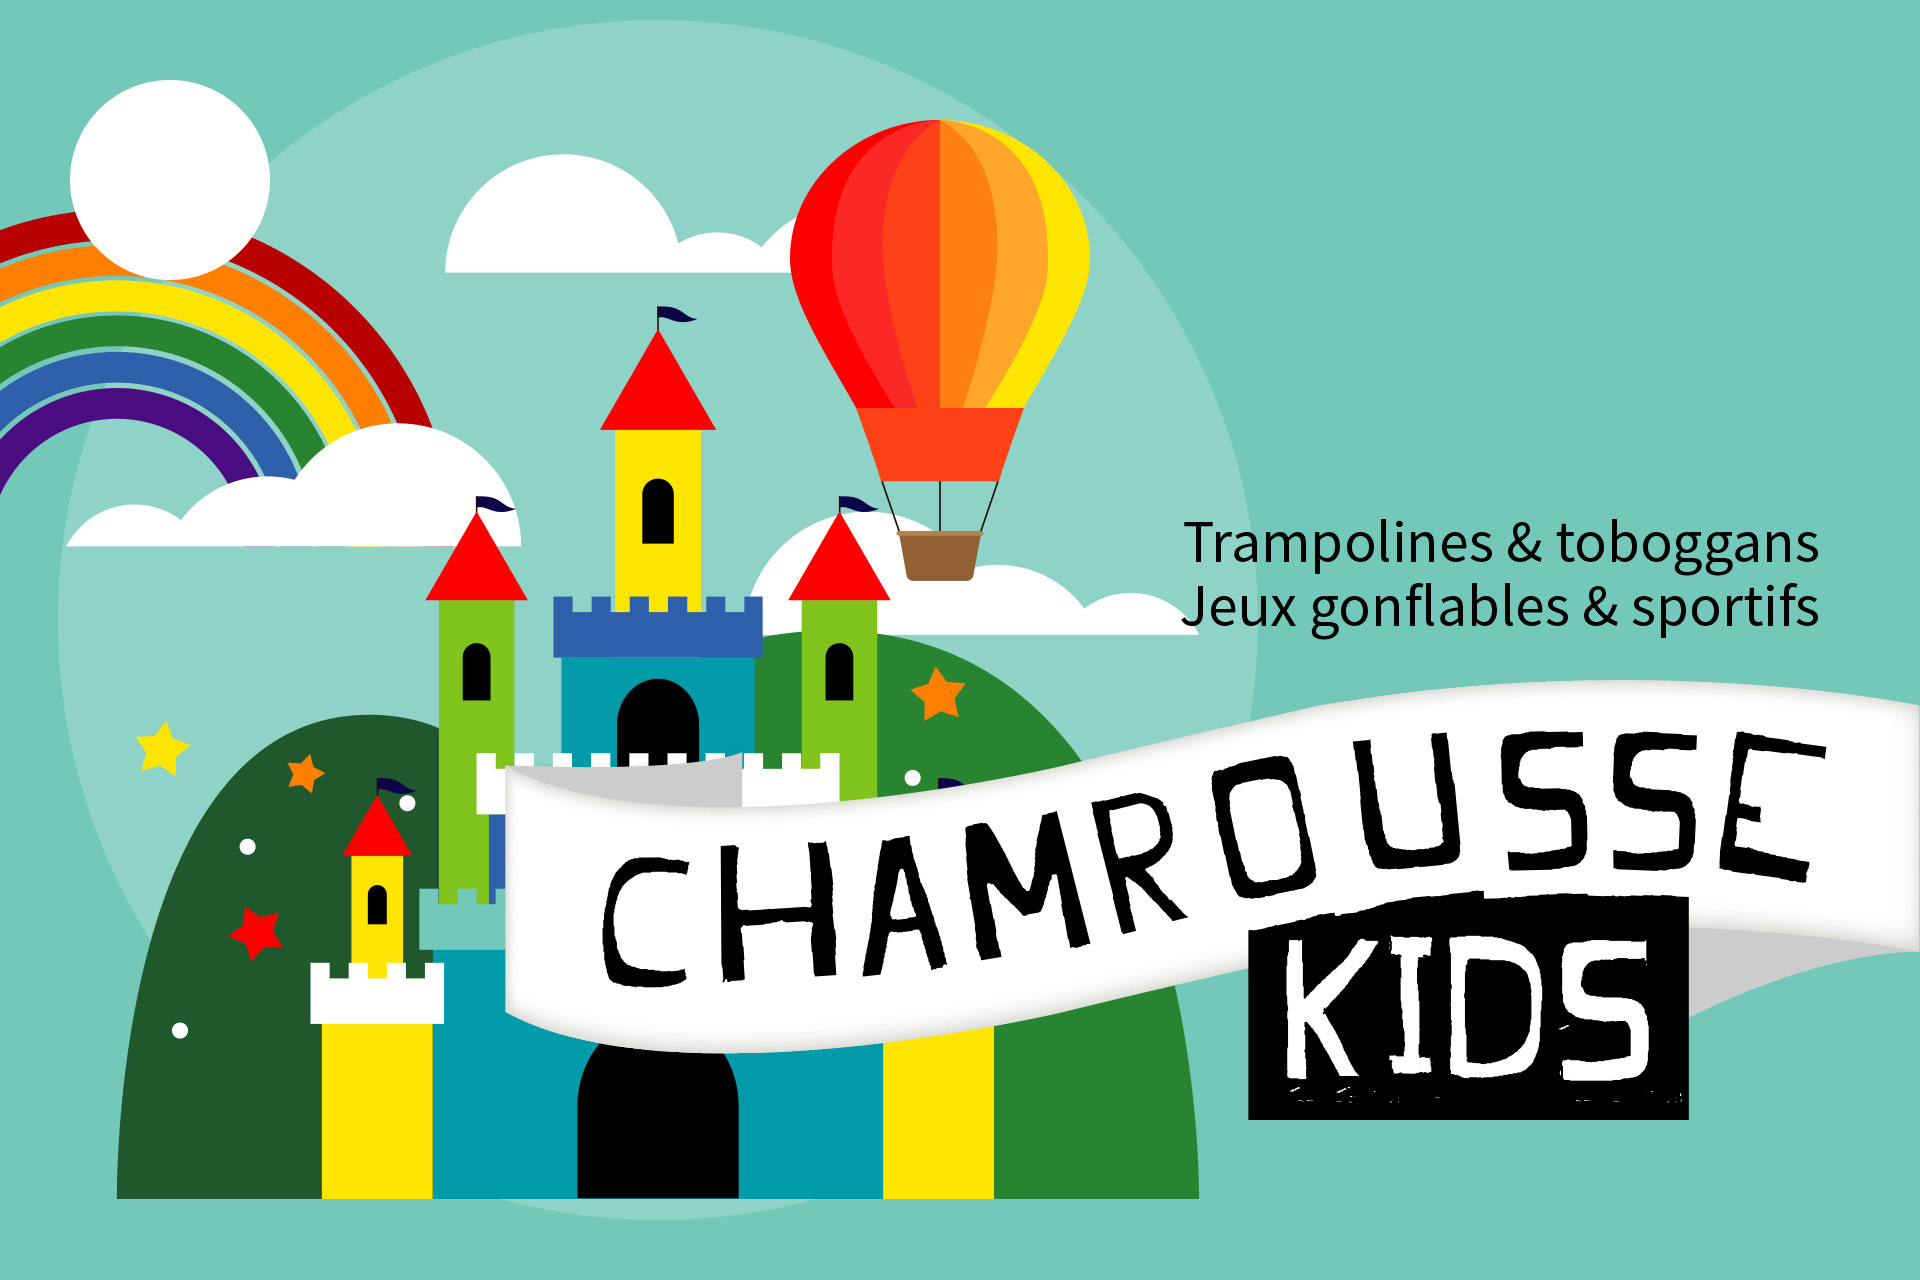 Chamrousse Kids parc jeux gonflables enfant été station montagne grenoble isère alpes france